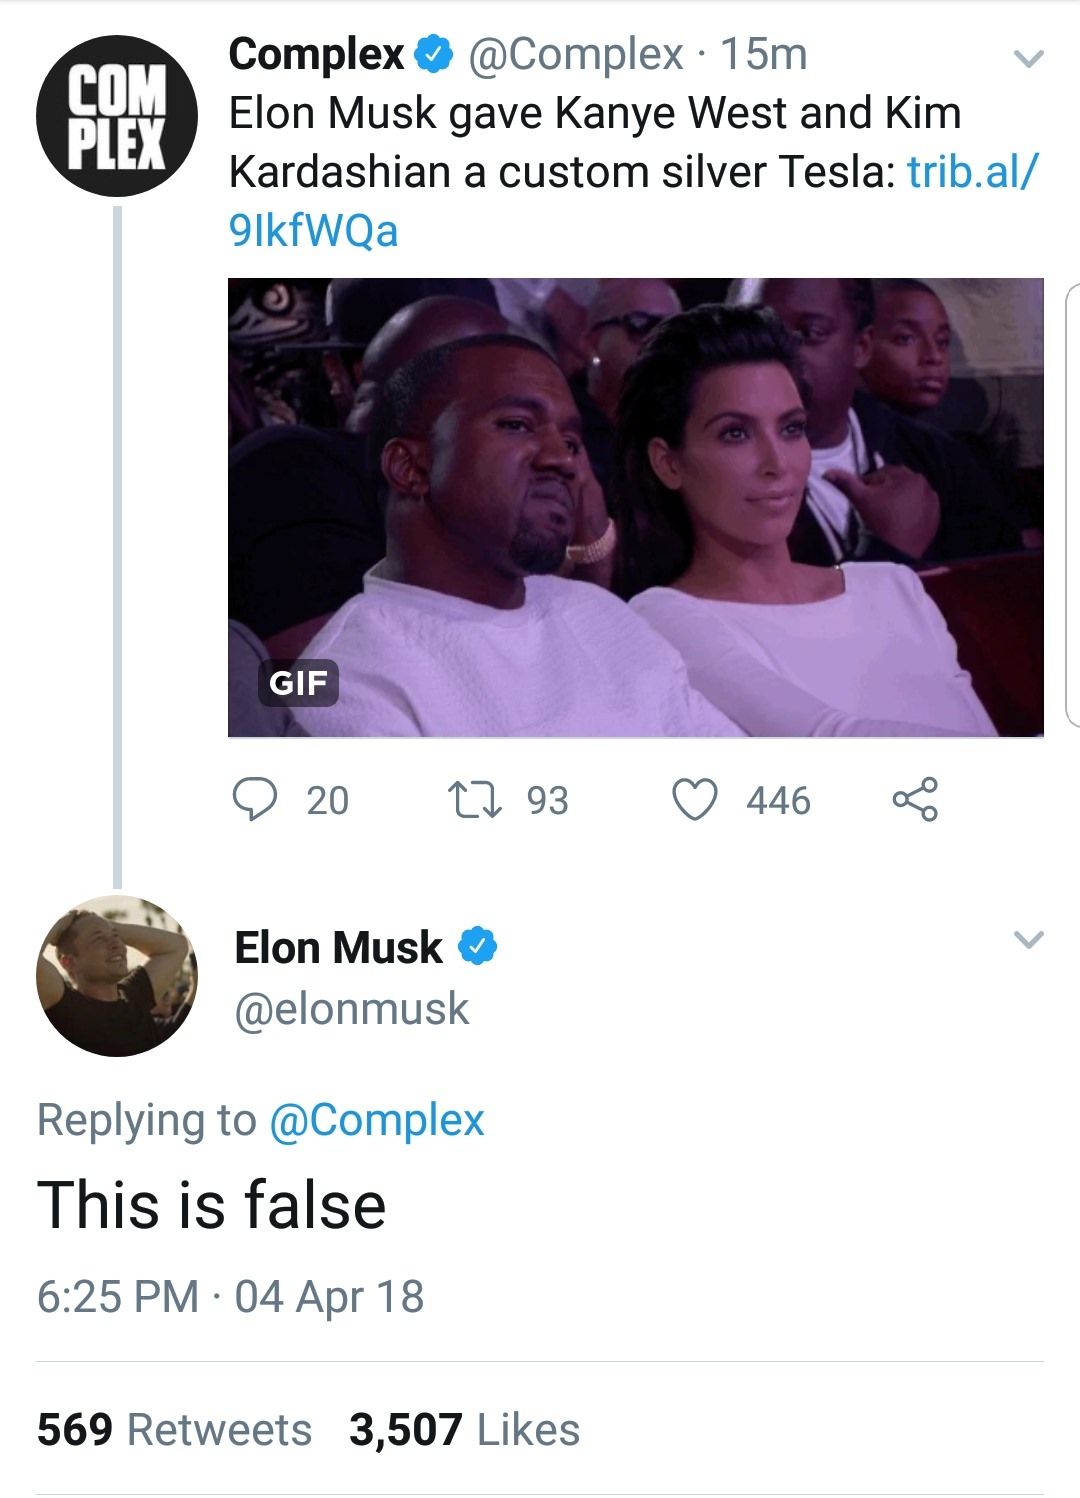 Elon Musk has no time for your false shit.